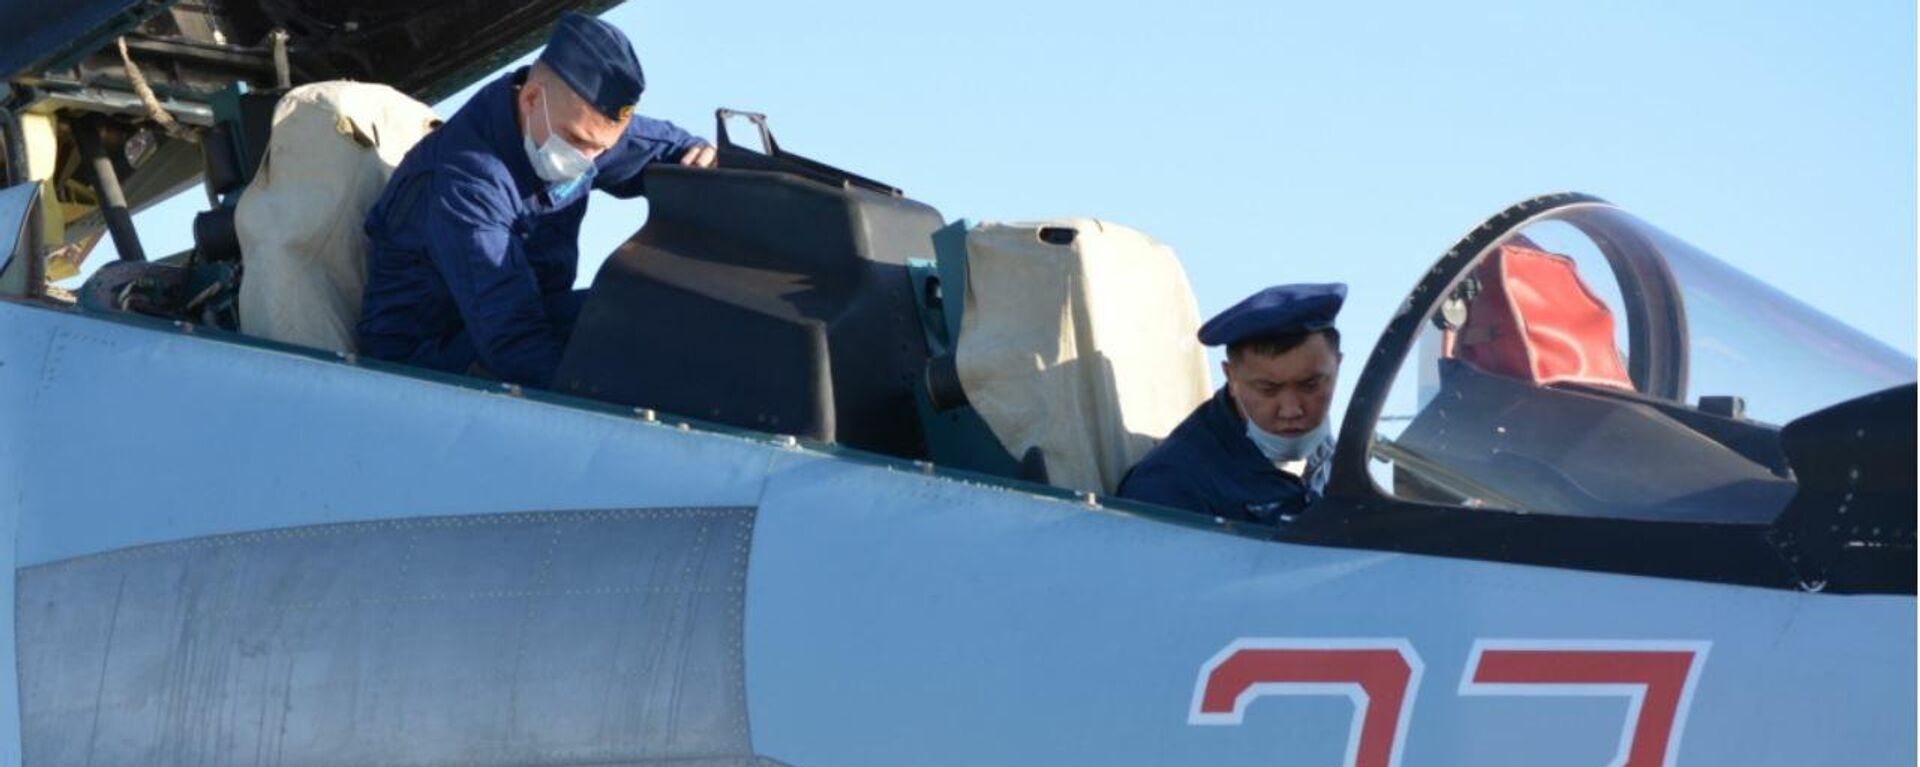 Экипажи истребителей Су-30СМ ВКС РФ провели совместную летную тренировку с летчиками ВВС Армии Китая - Sputnik Latvija, 1920, 13.08.2021